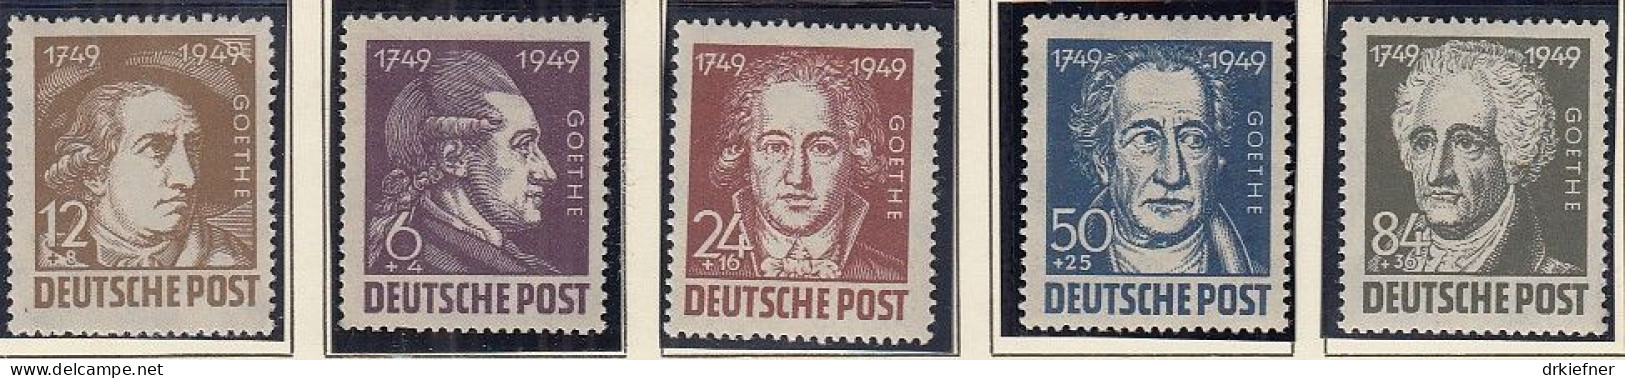 SBZ  234-238, Postfrisch **, Johann Wolfgang Von Goethe, 1949 - Mint